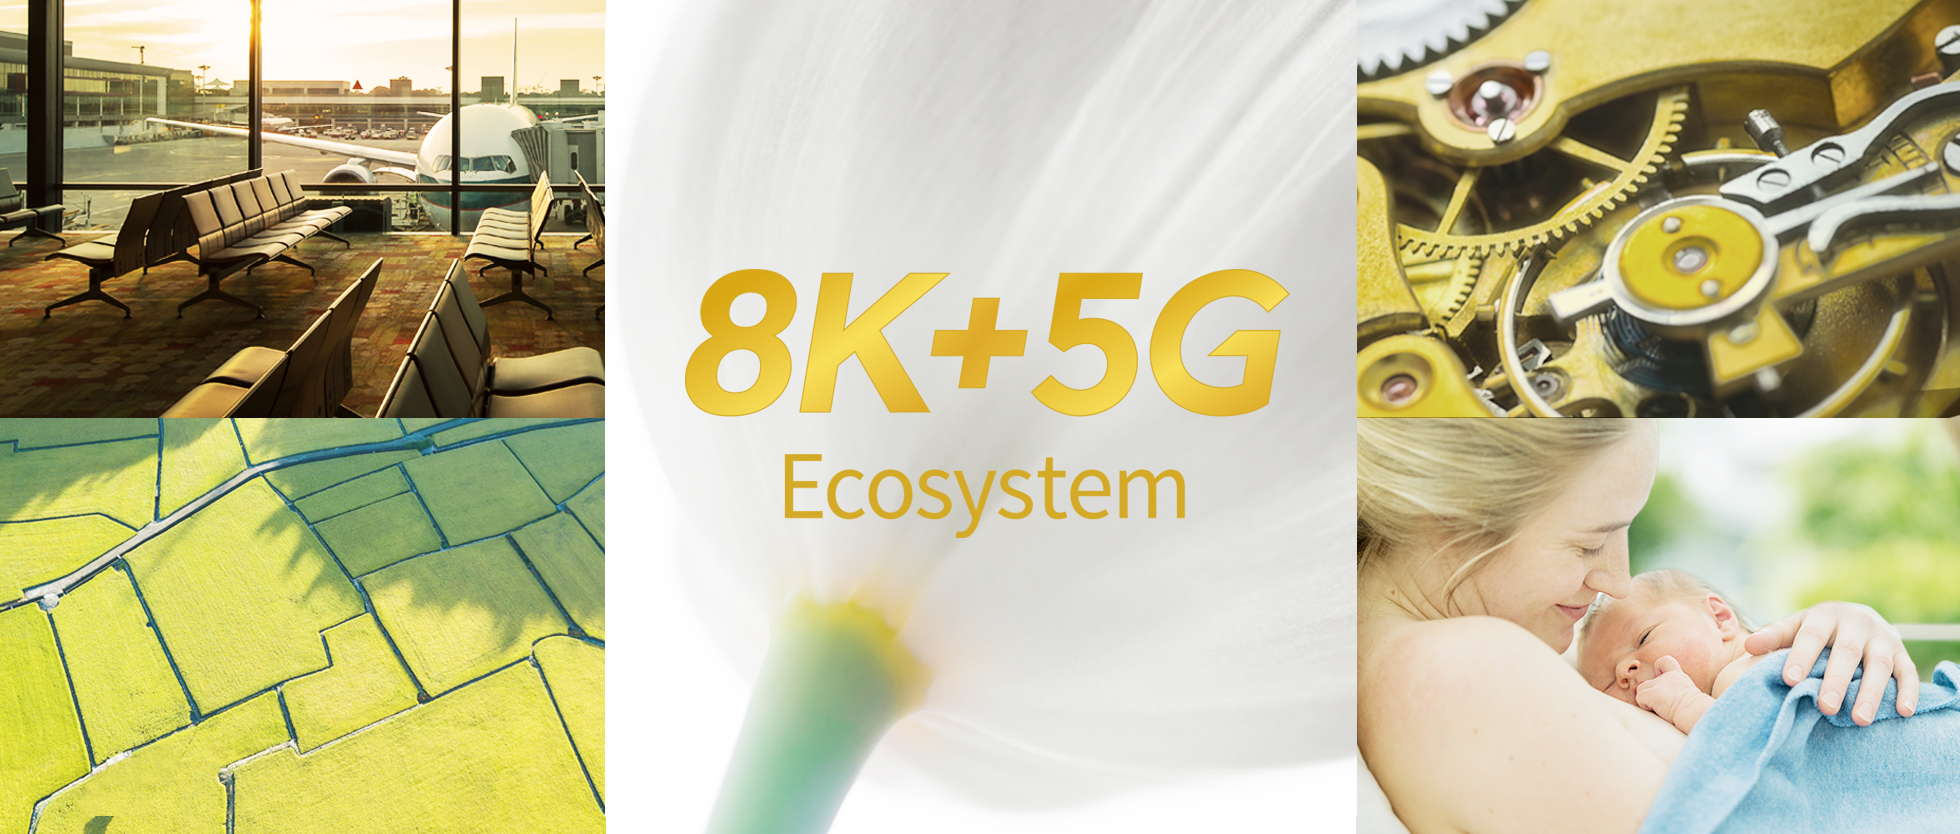 8K + 5G Ecosystem 